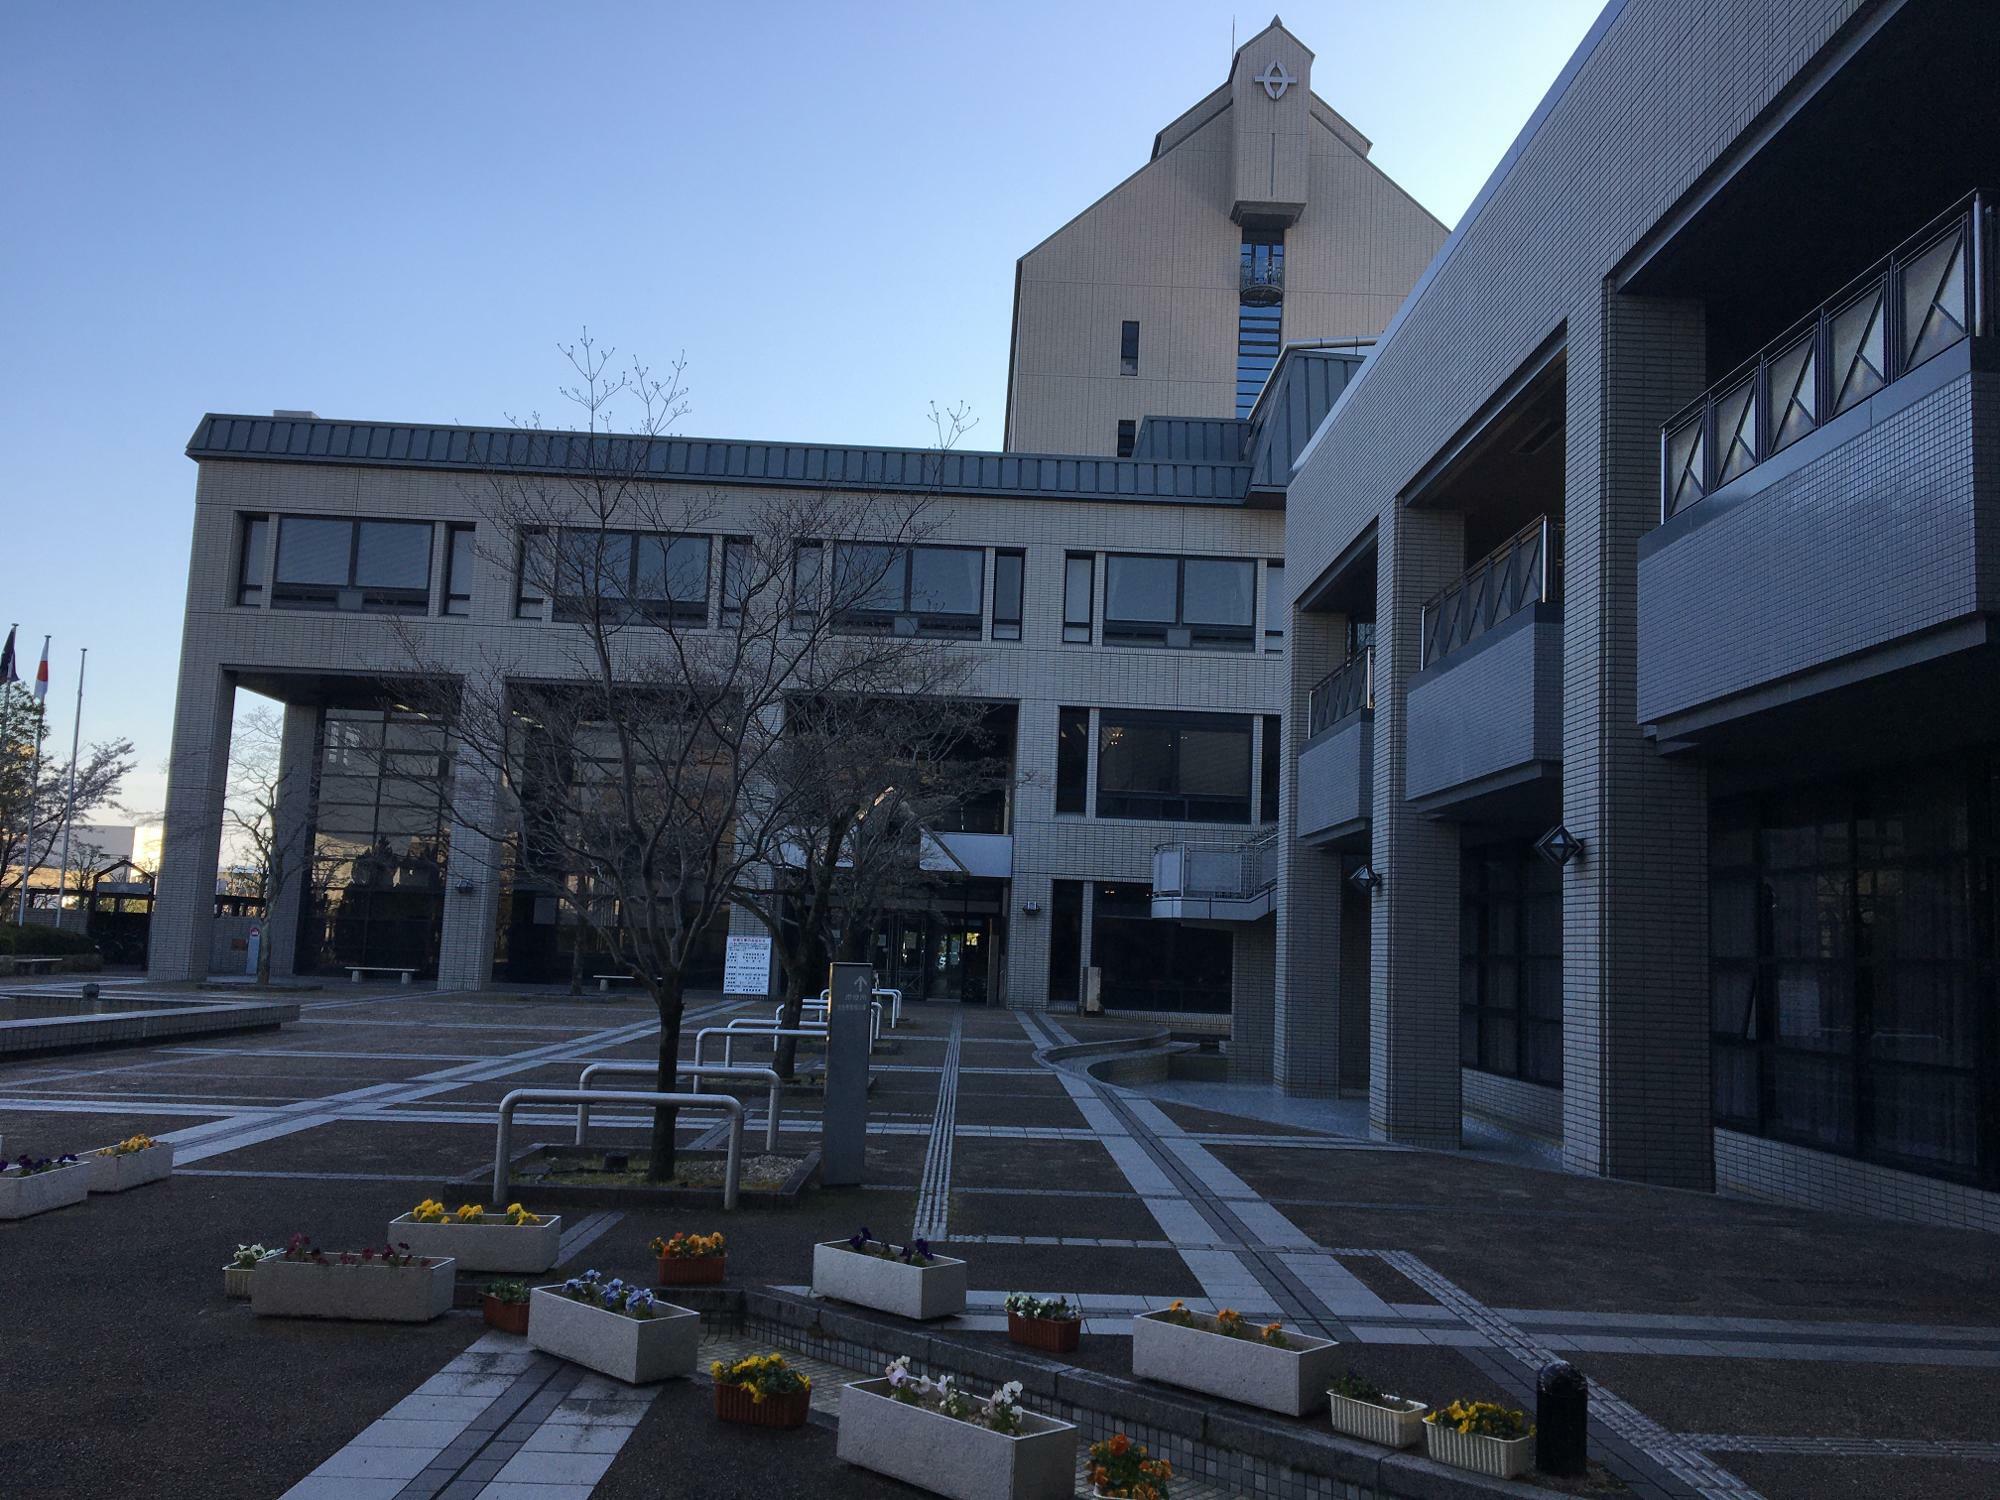 ※画像は、2020年4月に撮影した「草津市役所」の様子。